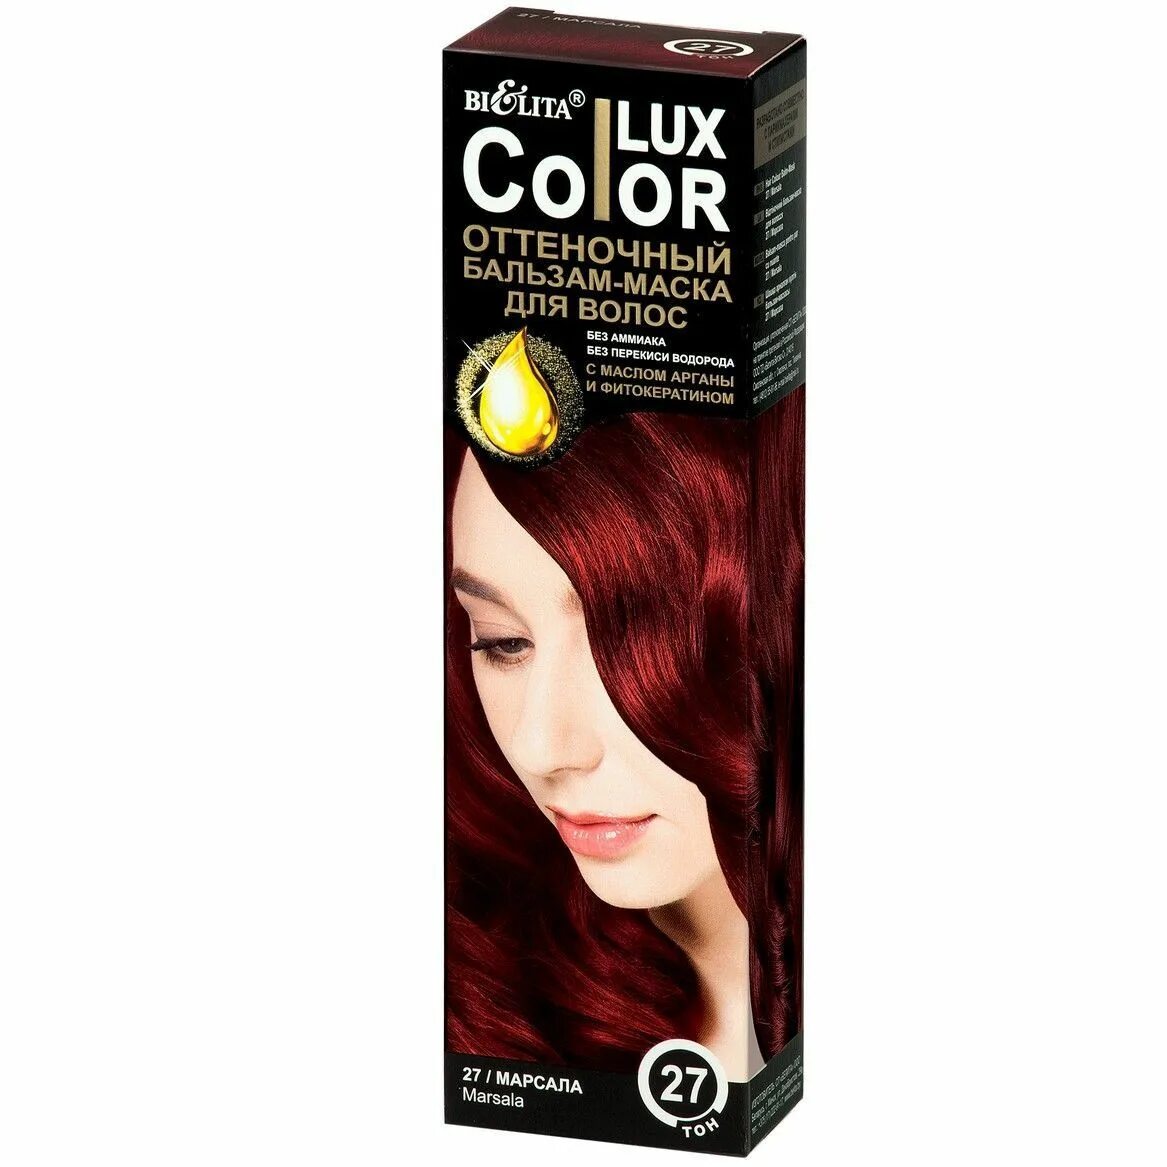 Lux Color оттеночный бальзам-маска для волос тон 27 марсала (туба 100 мл). Оттеночный бальзам Белита Color Lux. Color Lux бальзам маска оттеночная для волос тон 27 марсала 100мл. Оттеночный бальзам Белита Color Lux палитра.